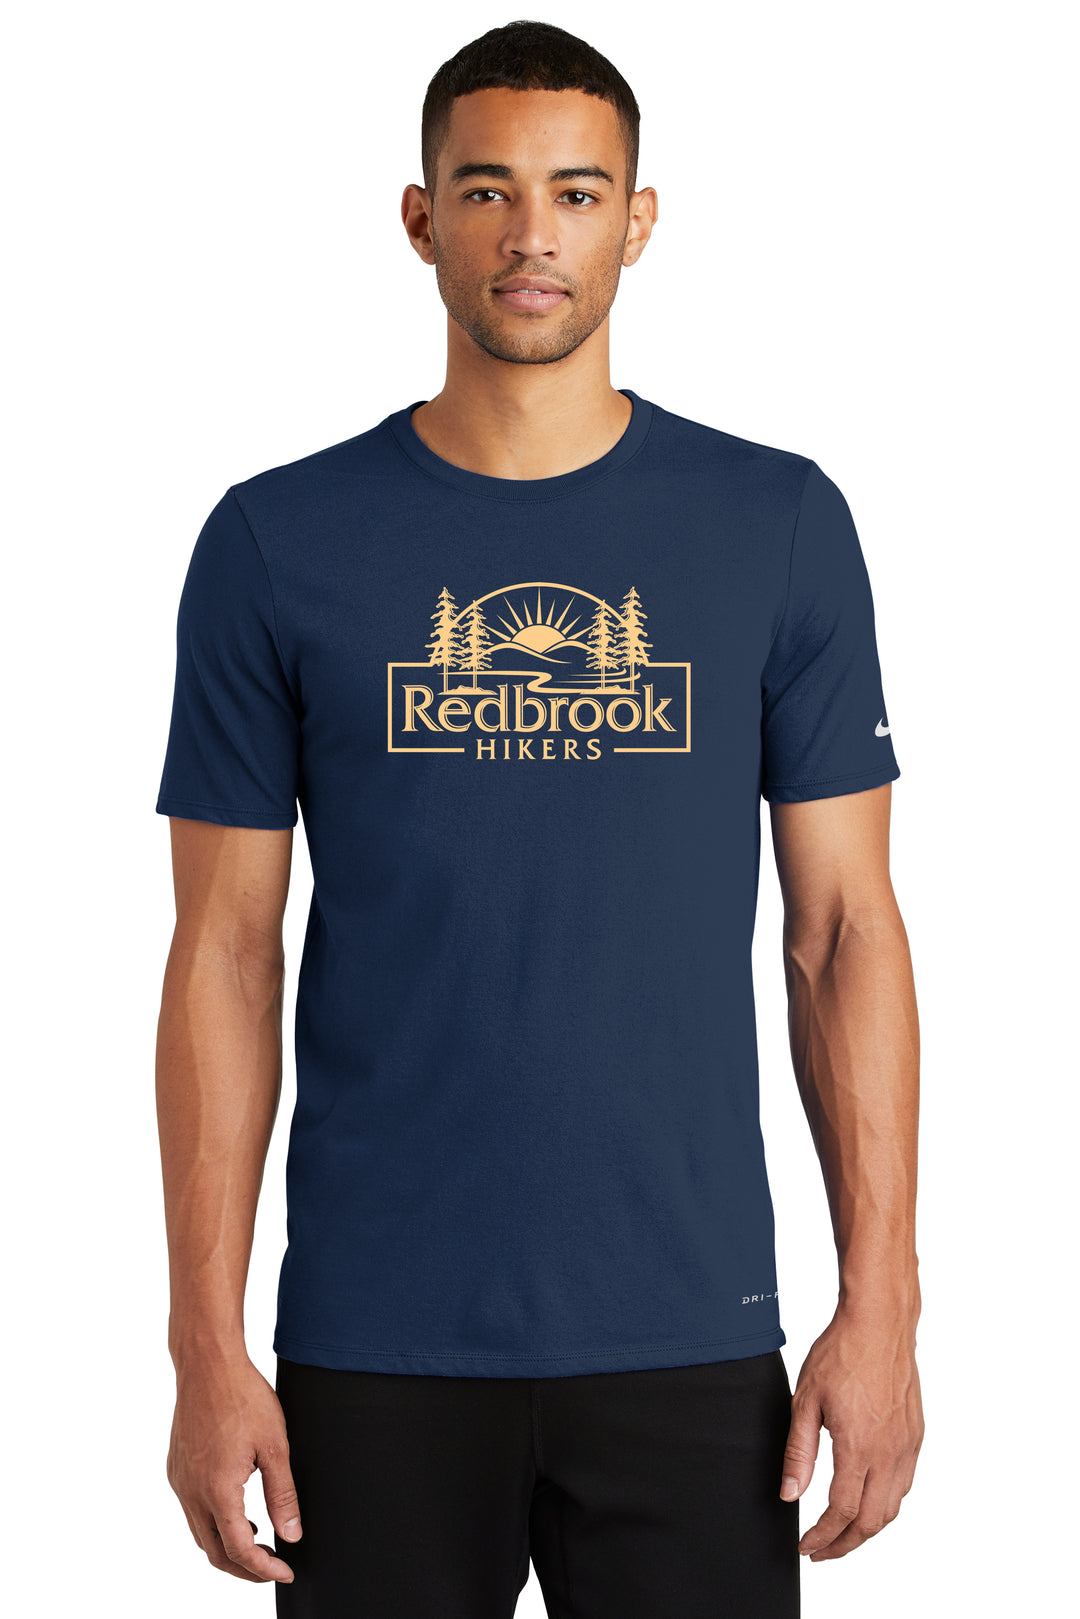 Redbrook Hikers- Nike Dri FIT Cotton/Poly Tee (NKBQ5231)